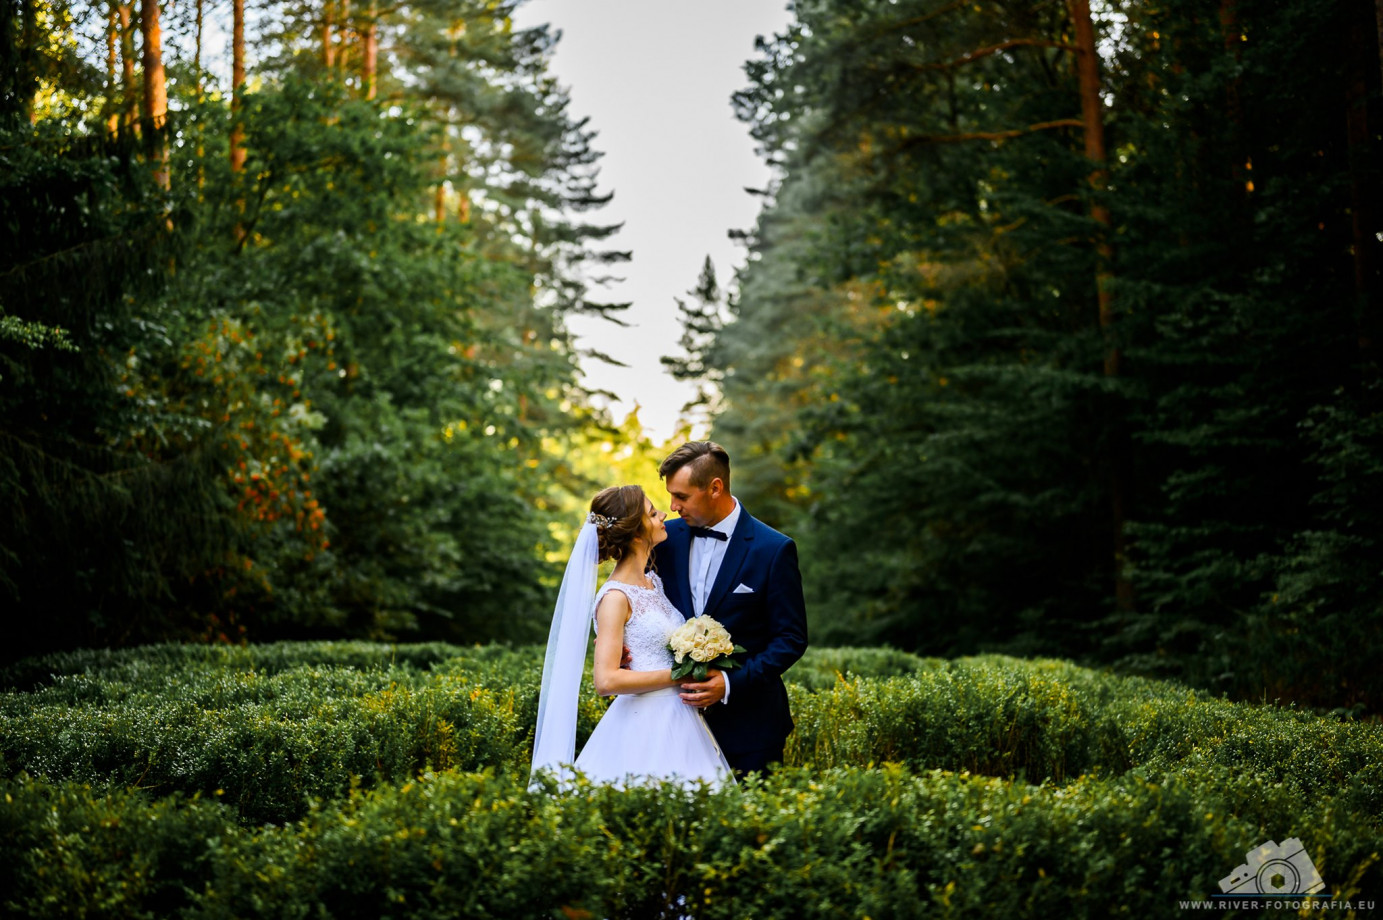 zdjęcia bialystok fotograf sebastian-wiszniewskie portfolio zdjecia slubne inspiracje wesele plener slubny sesja slubna